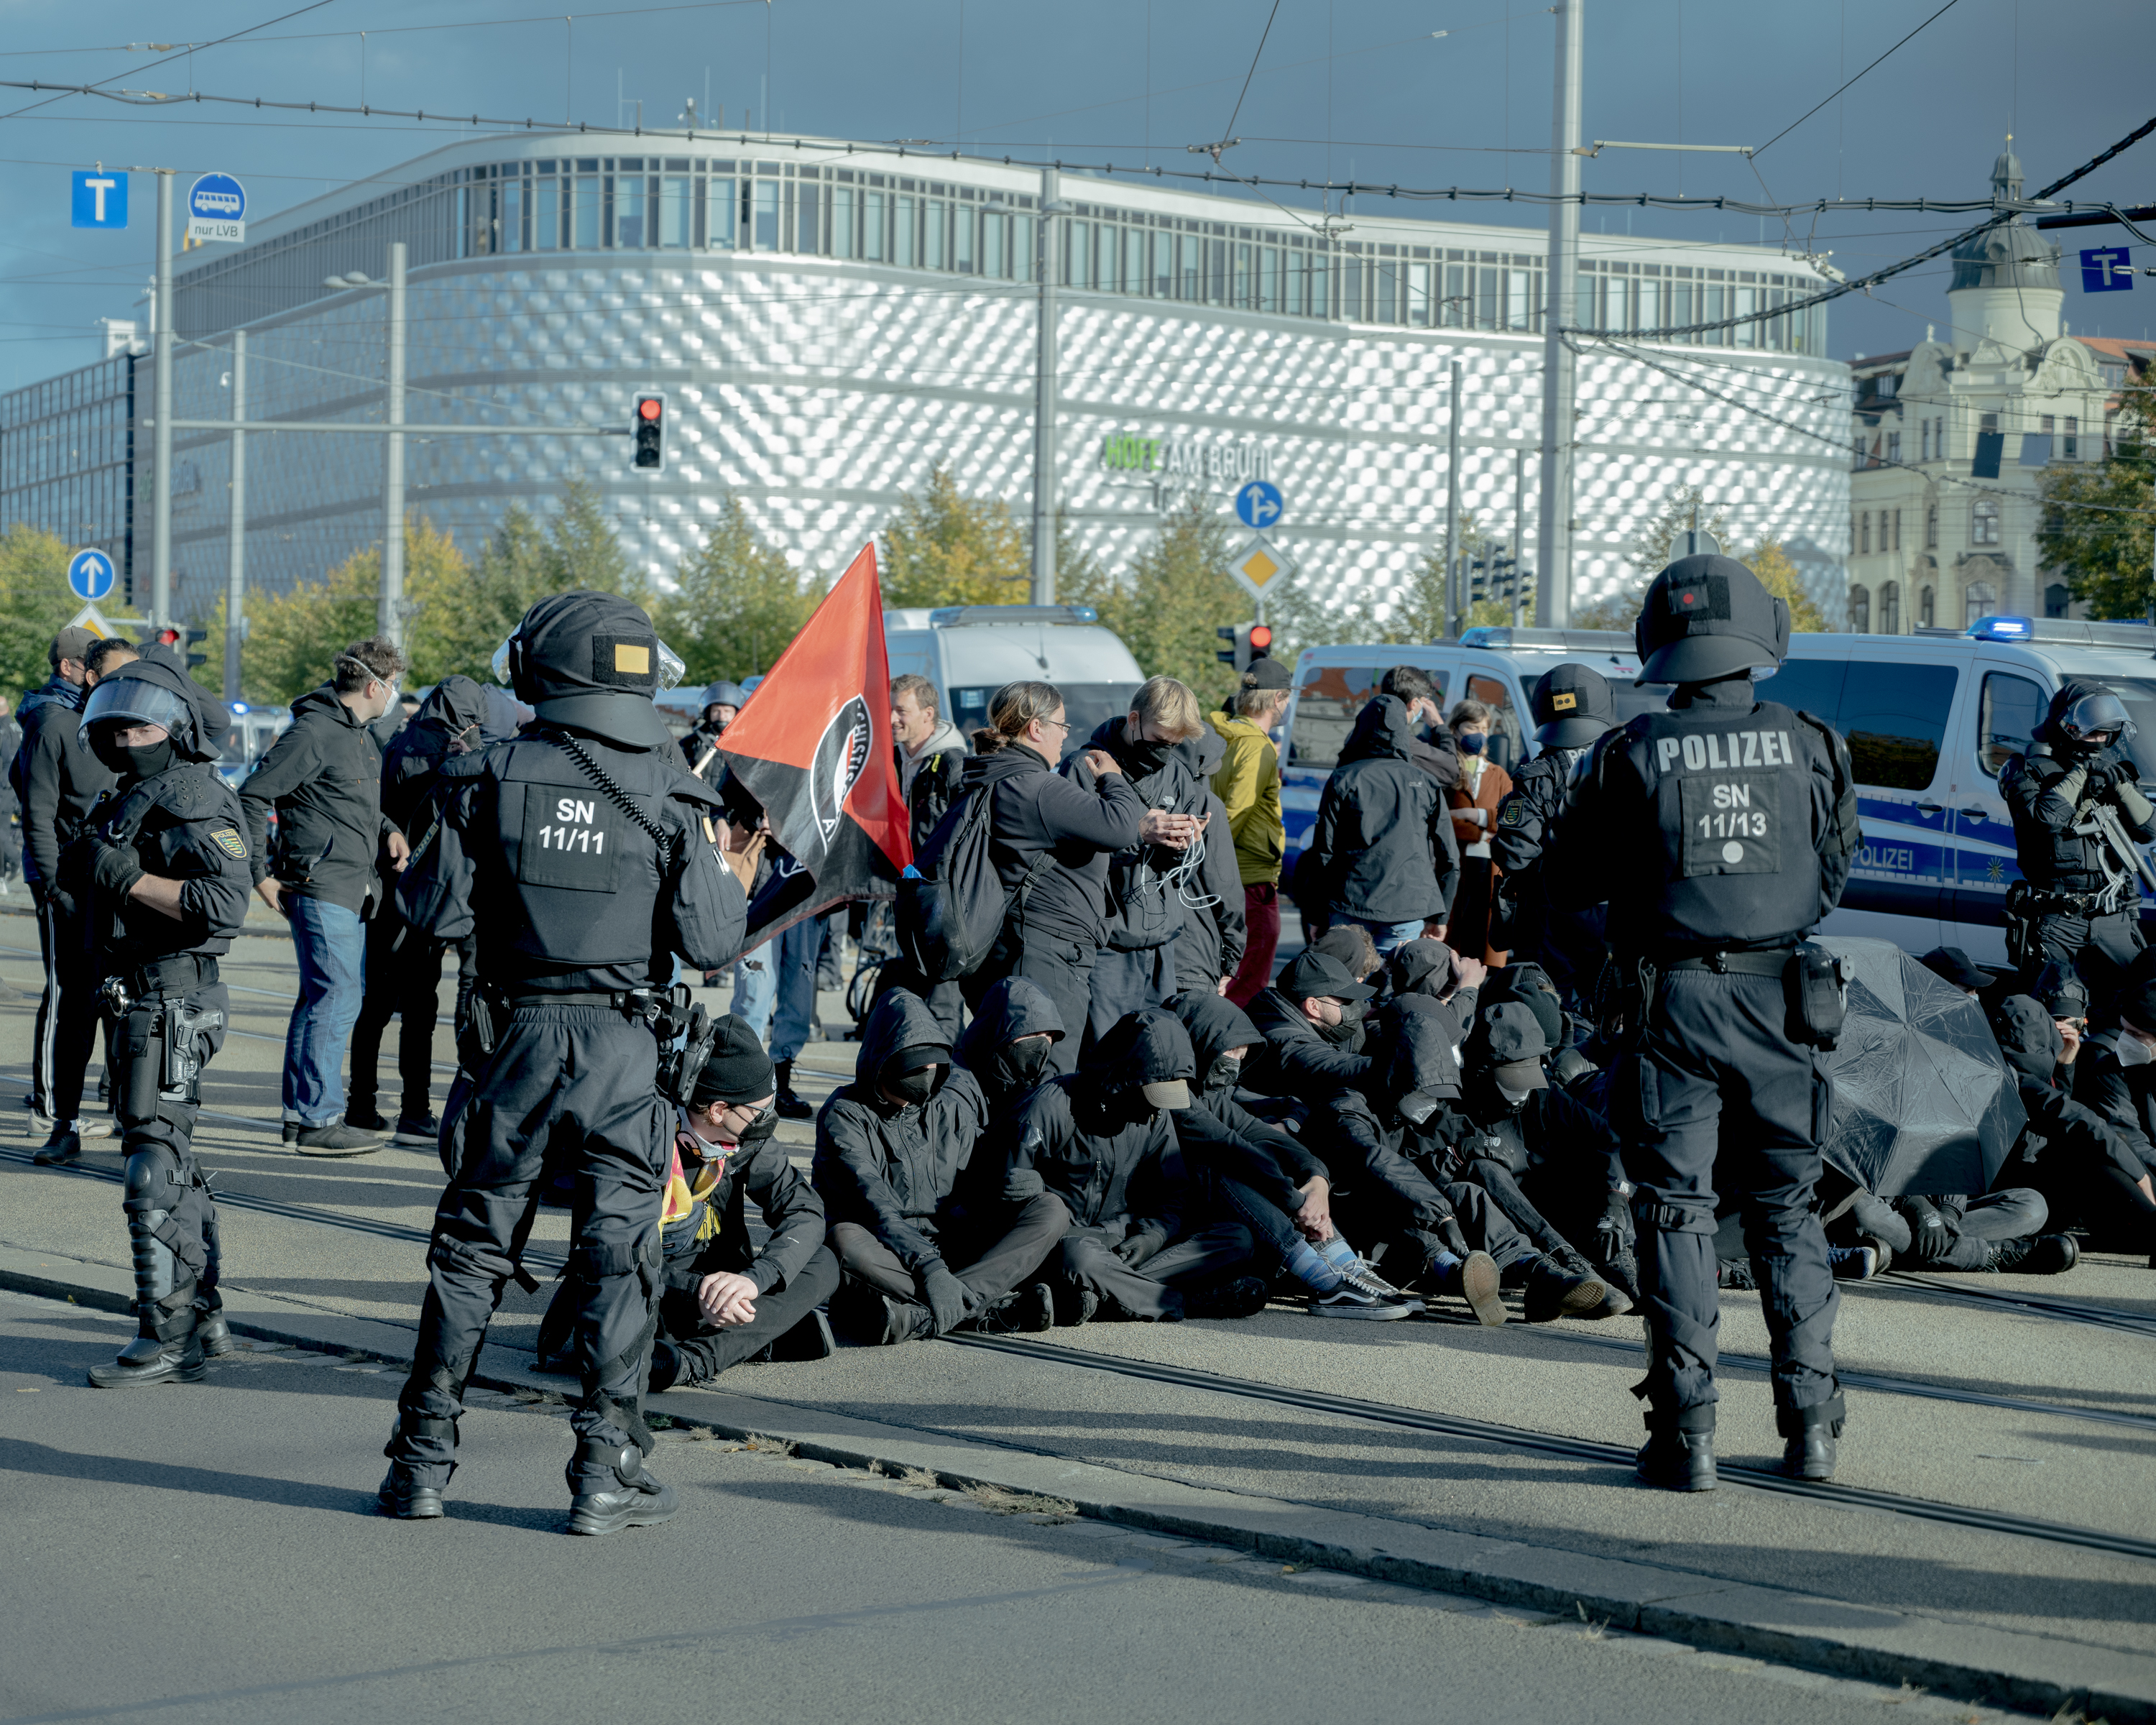   »Das hat sich immer weiter zugespitzt« | Warum Leipzig nimmt Platz den Protest gegen die »Montagsdemos« eingestellt hat  